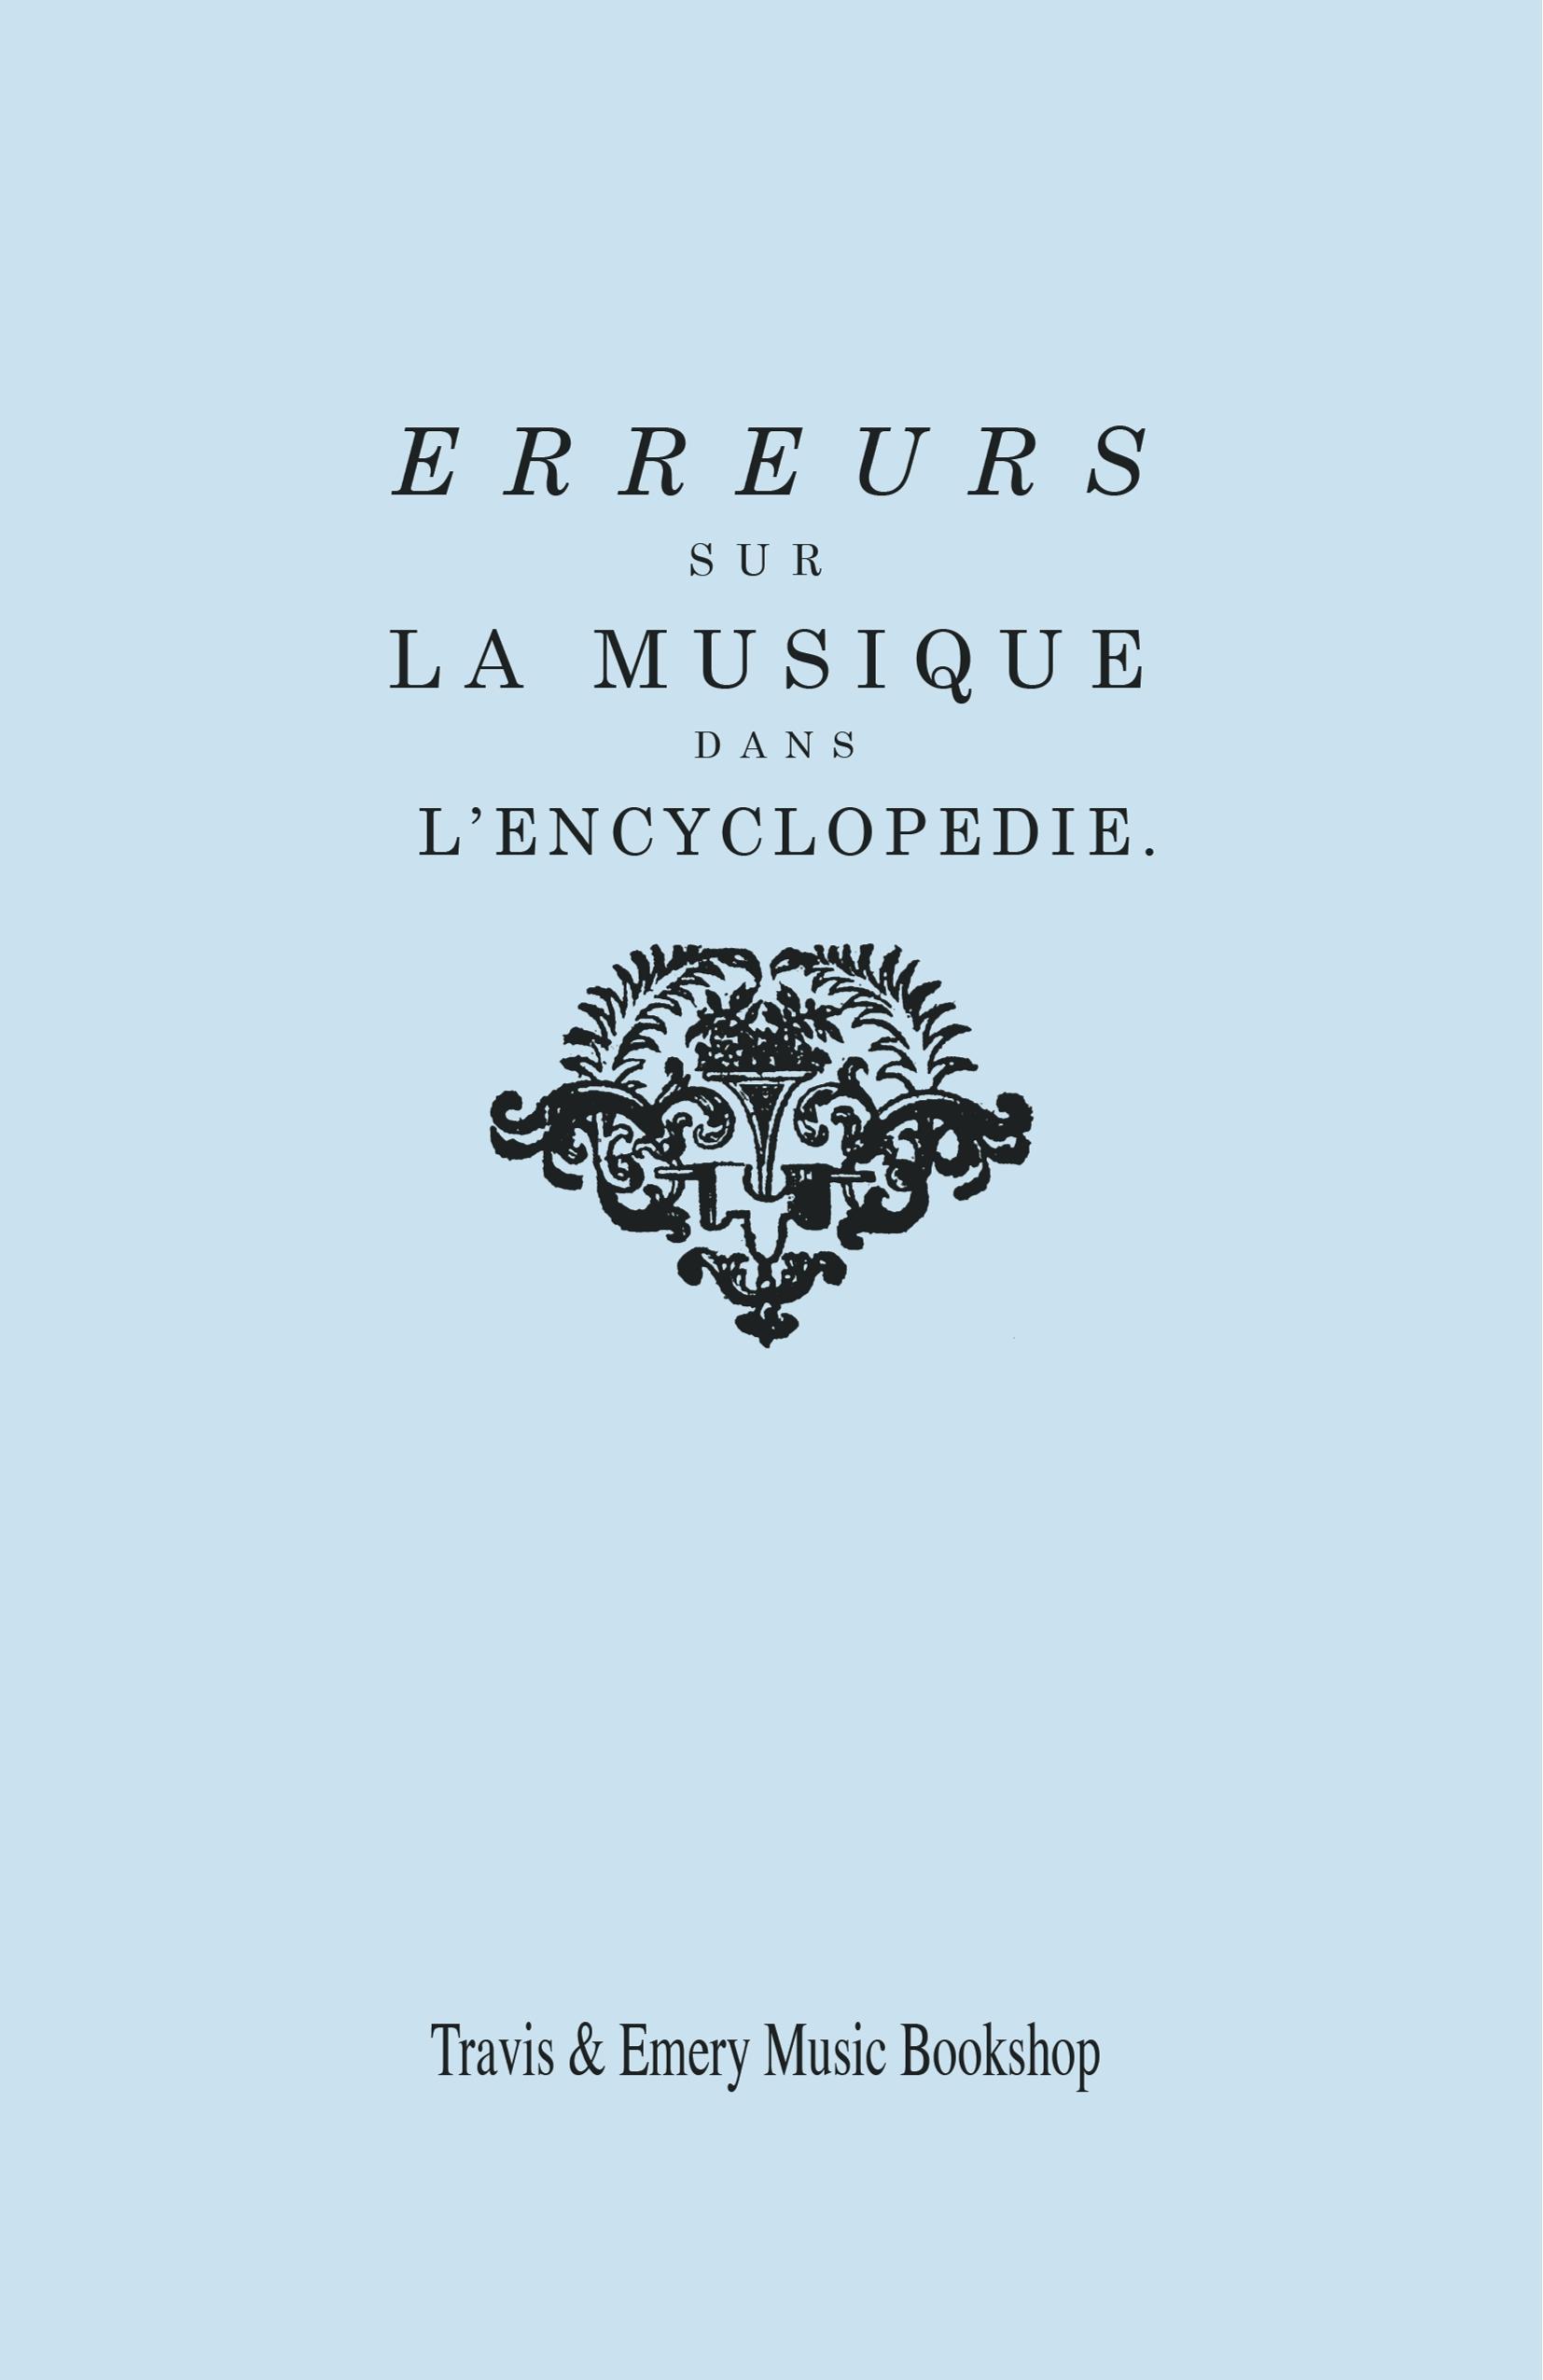 Erreurs sur la musique dans l Encyclopédie [de J.J. Rousseau] - Rameau, Jean-Philippe